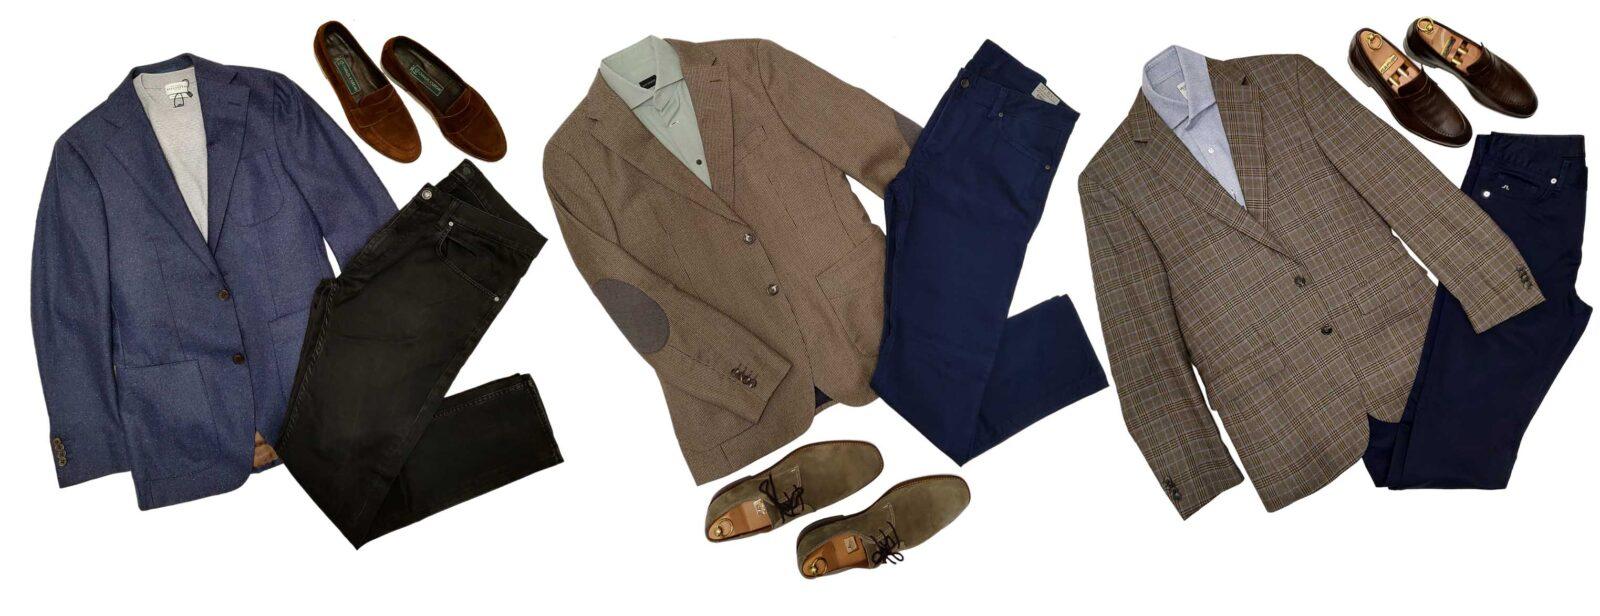 С чем можно носить мужской пиджак: 7 стильных сочетаний | Стиль Men's Club